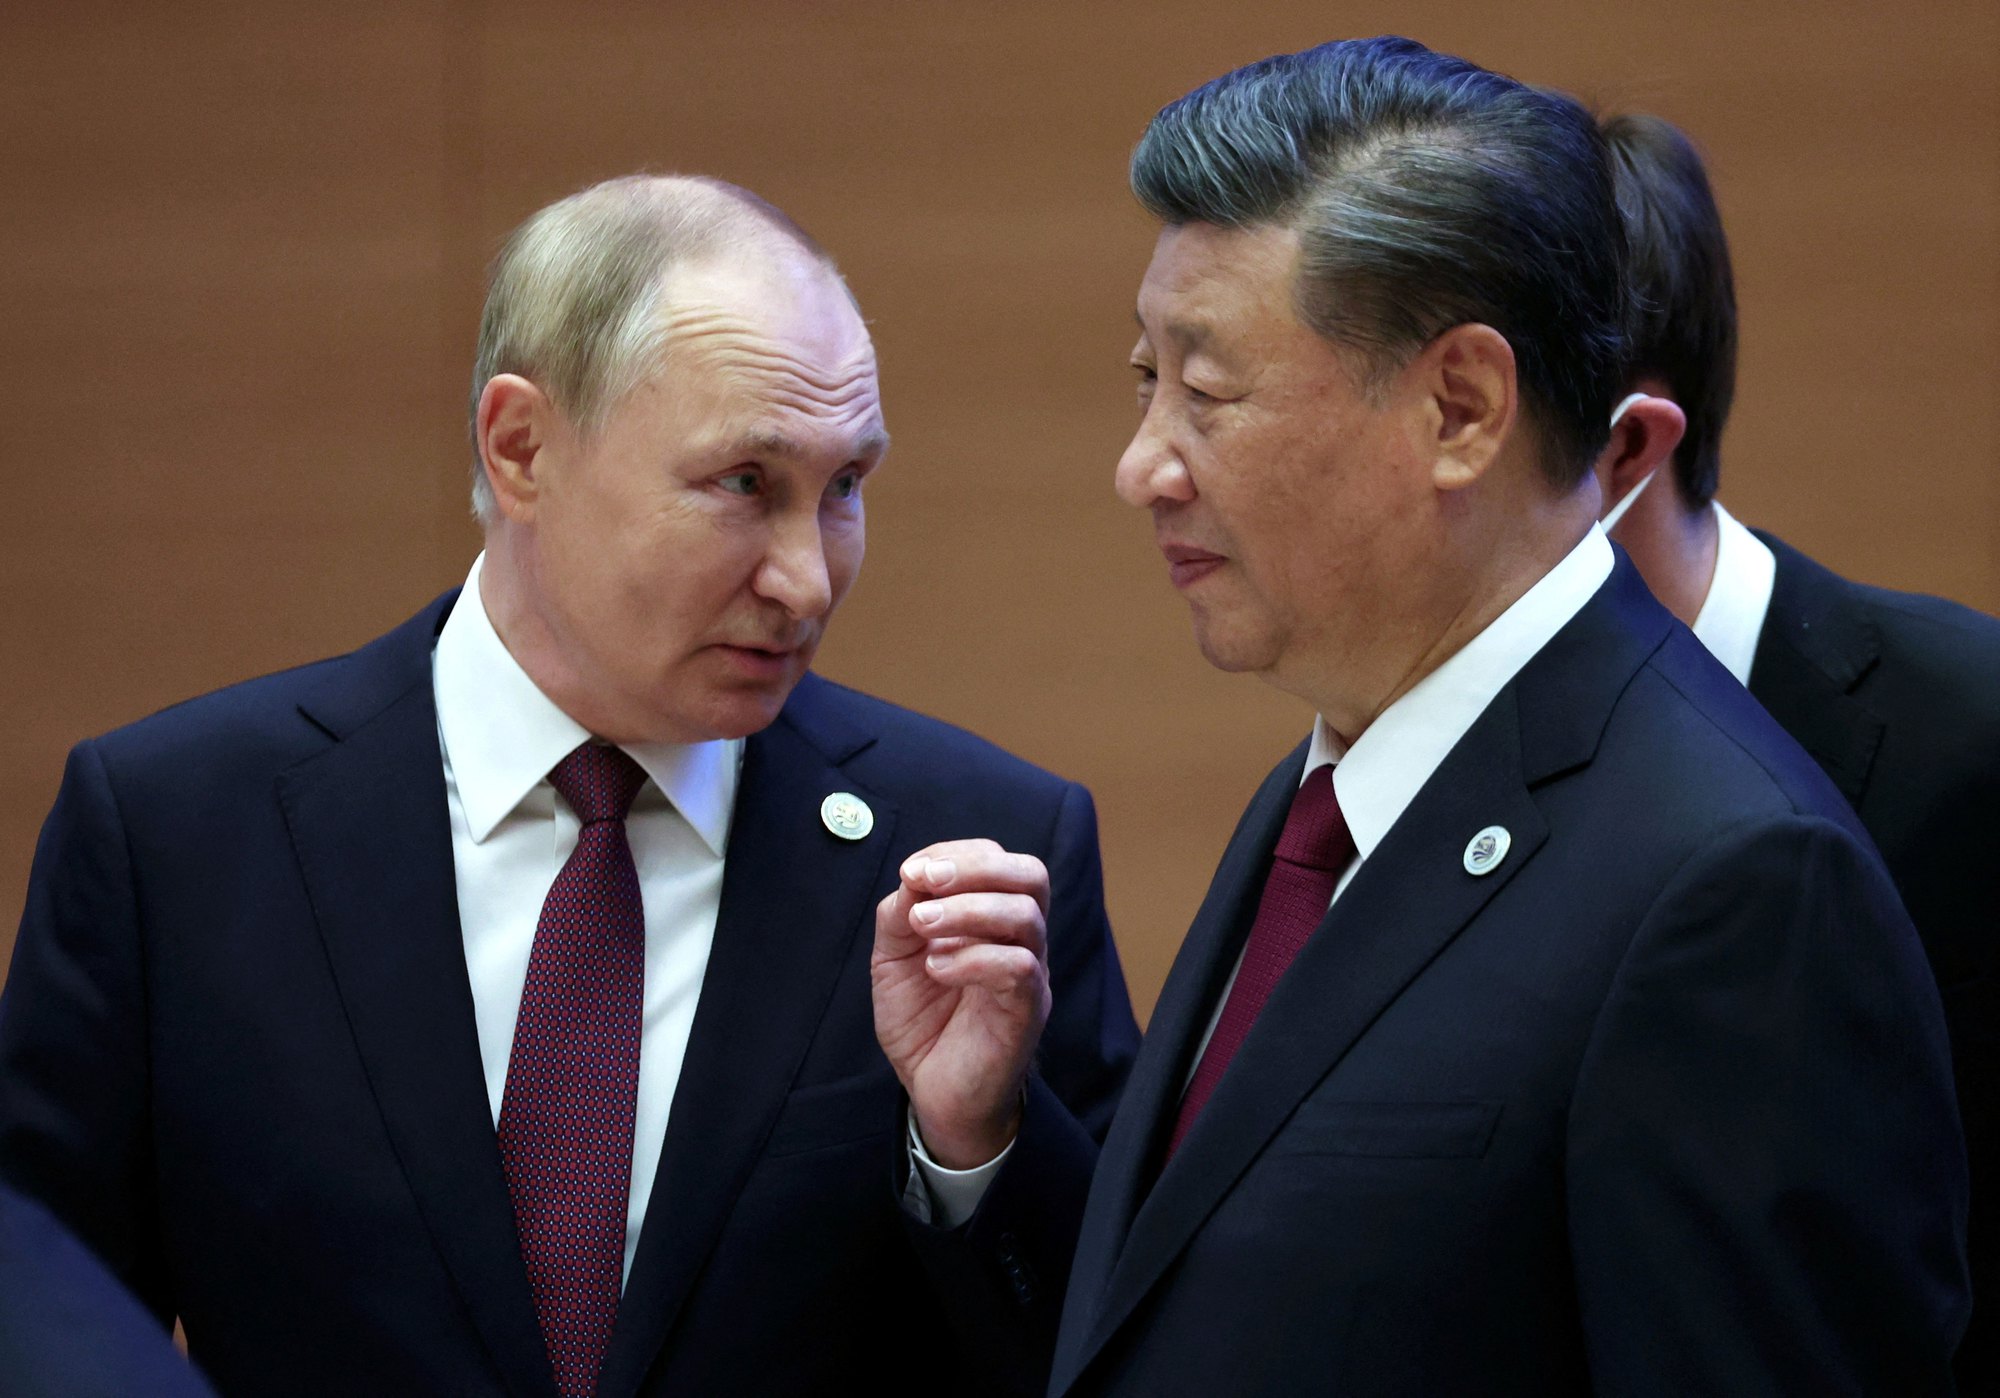 Putin giữ lời hứa, tặng món quà ấn tượng cho Trung Quốc - Ảnh 1.